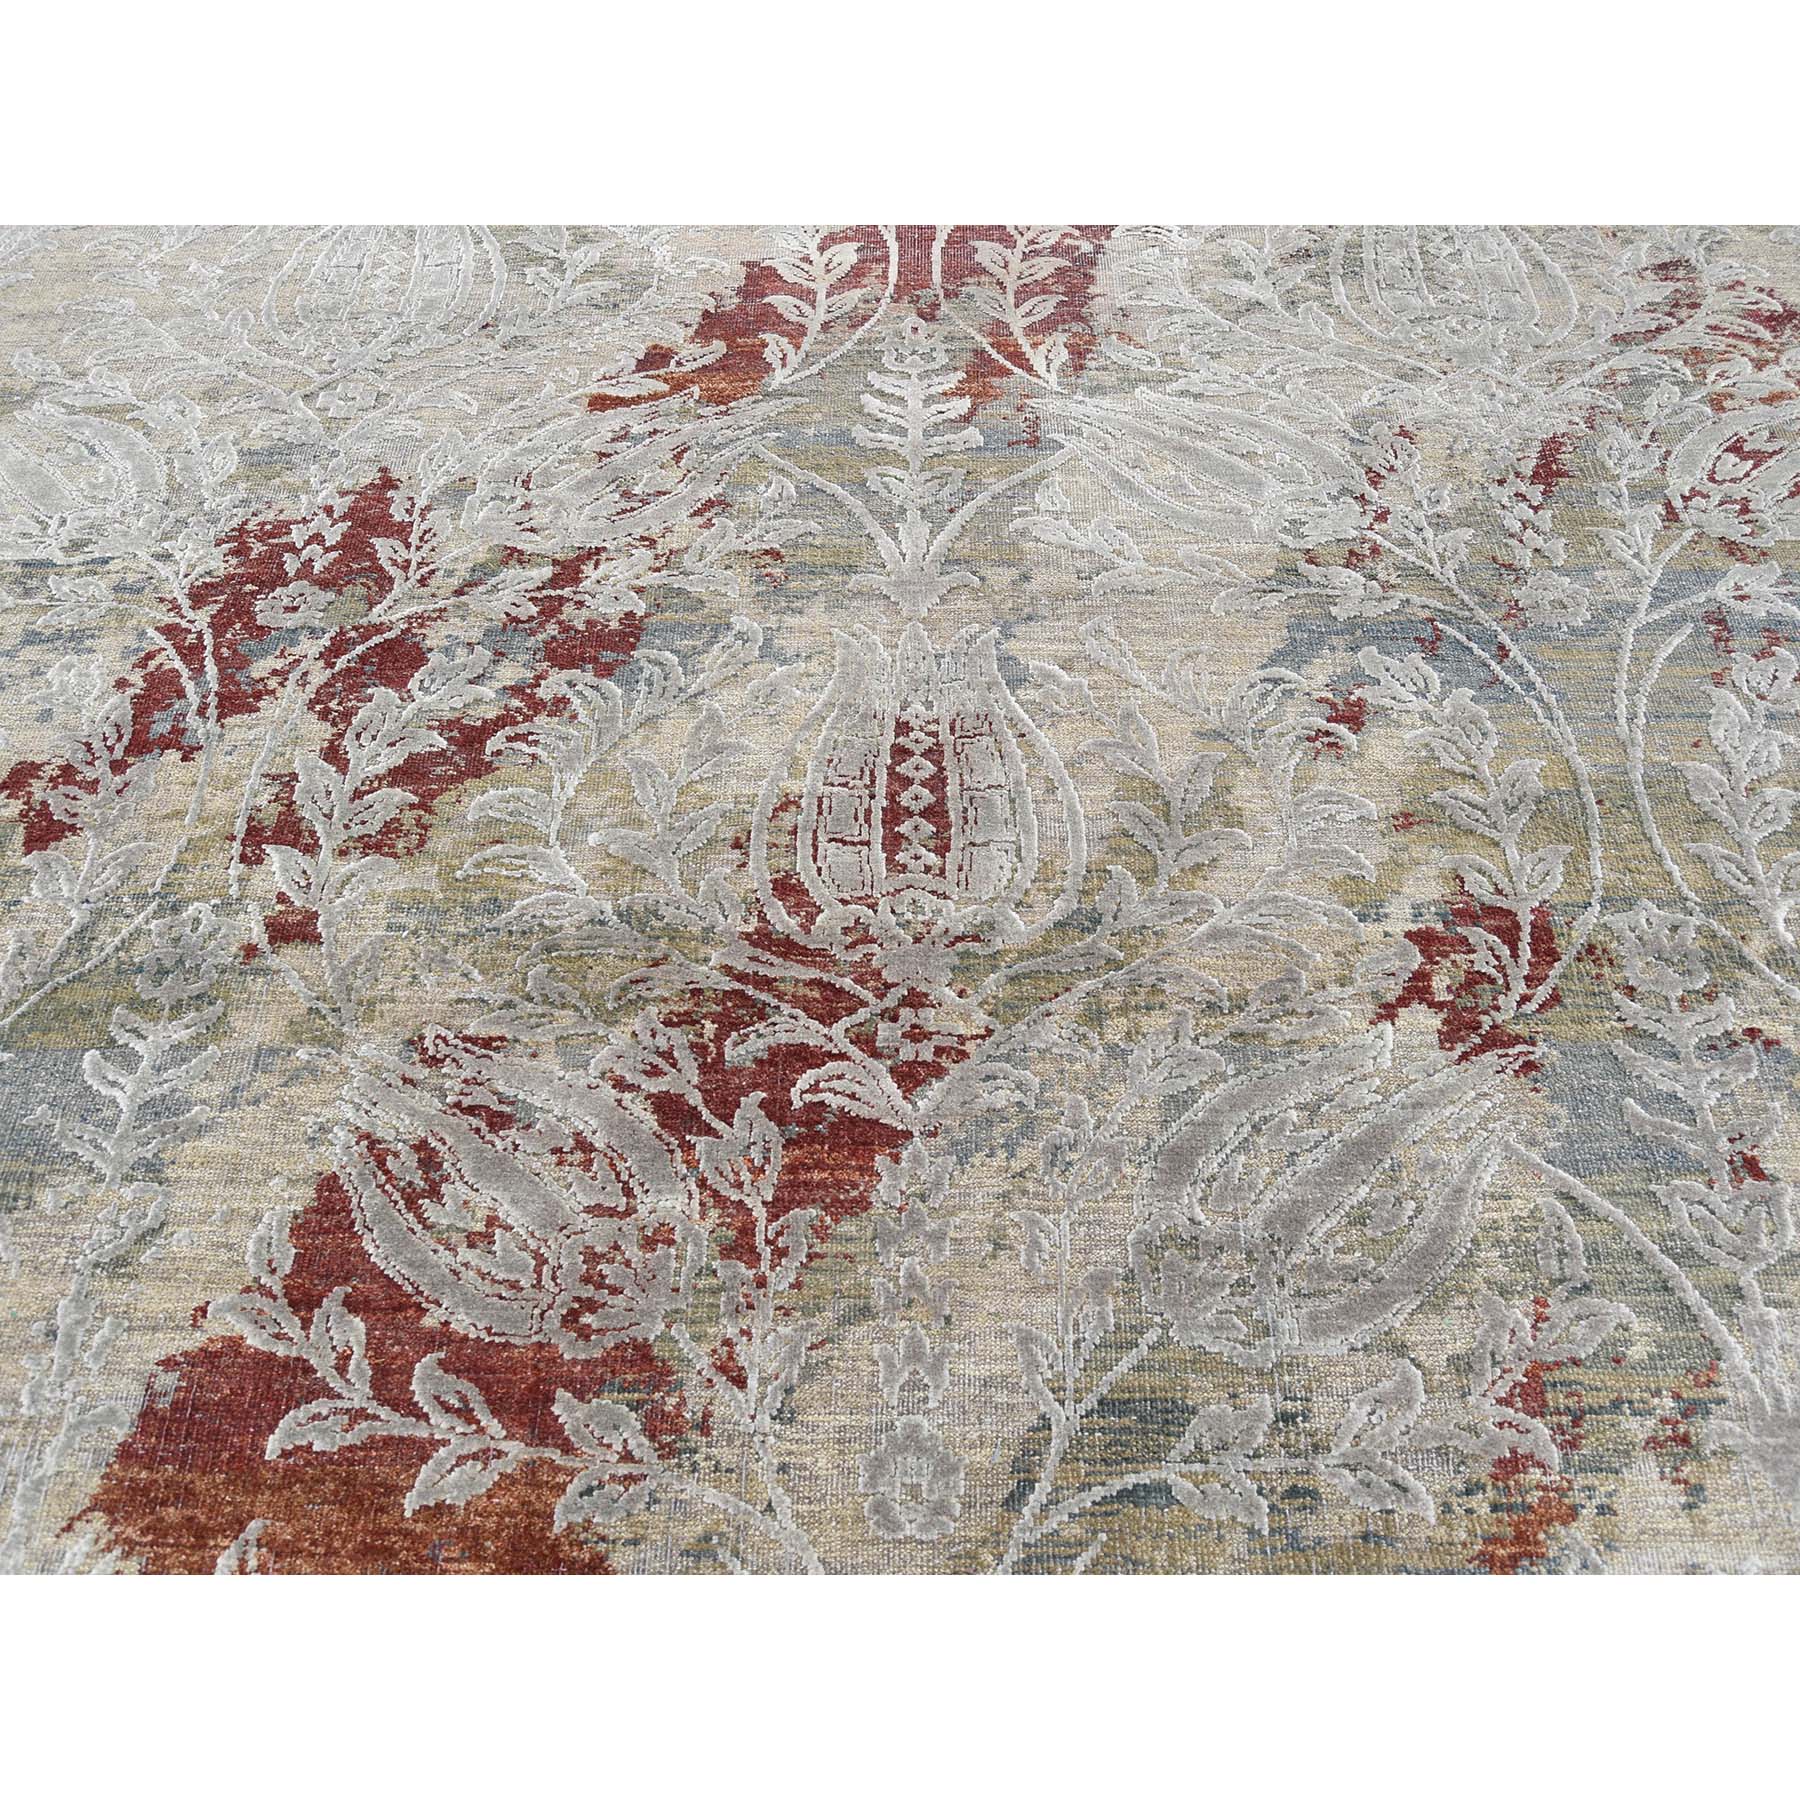 9-2--x12-2-- Silk With Textured Wool Broken Tulip Design Hand-Knotted Oriental Rug 